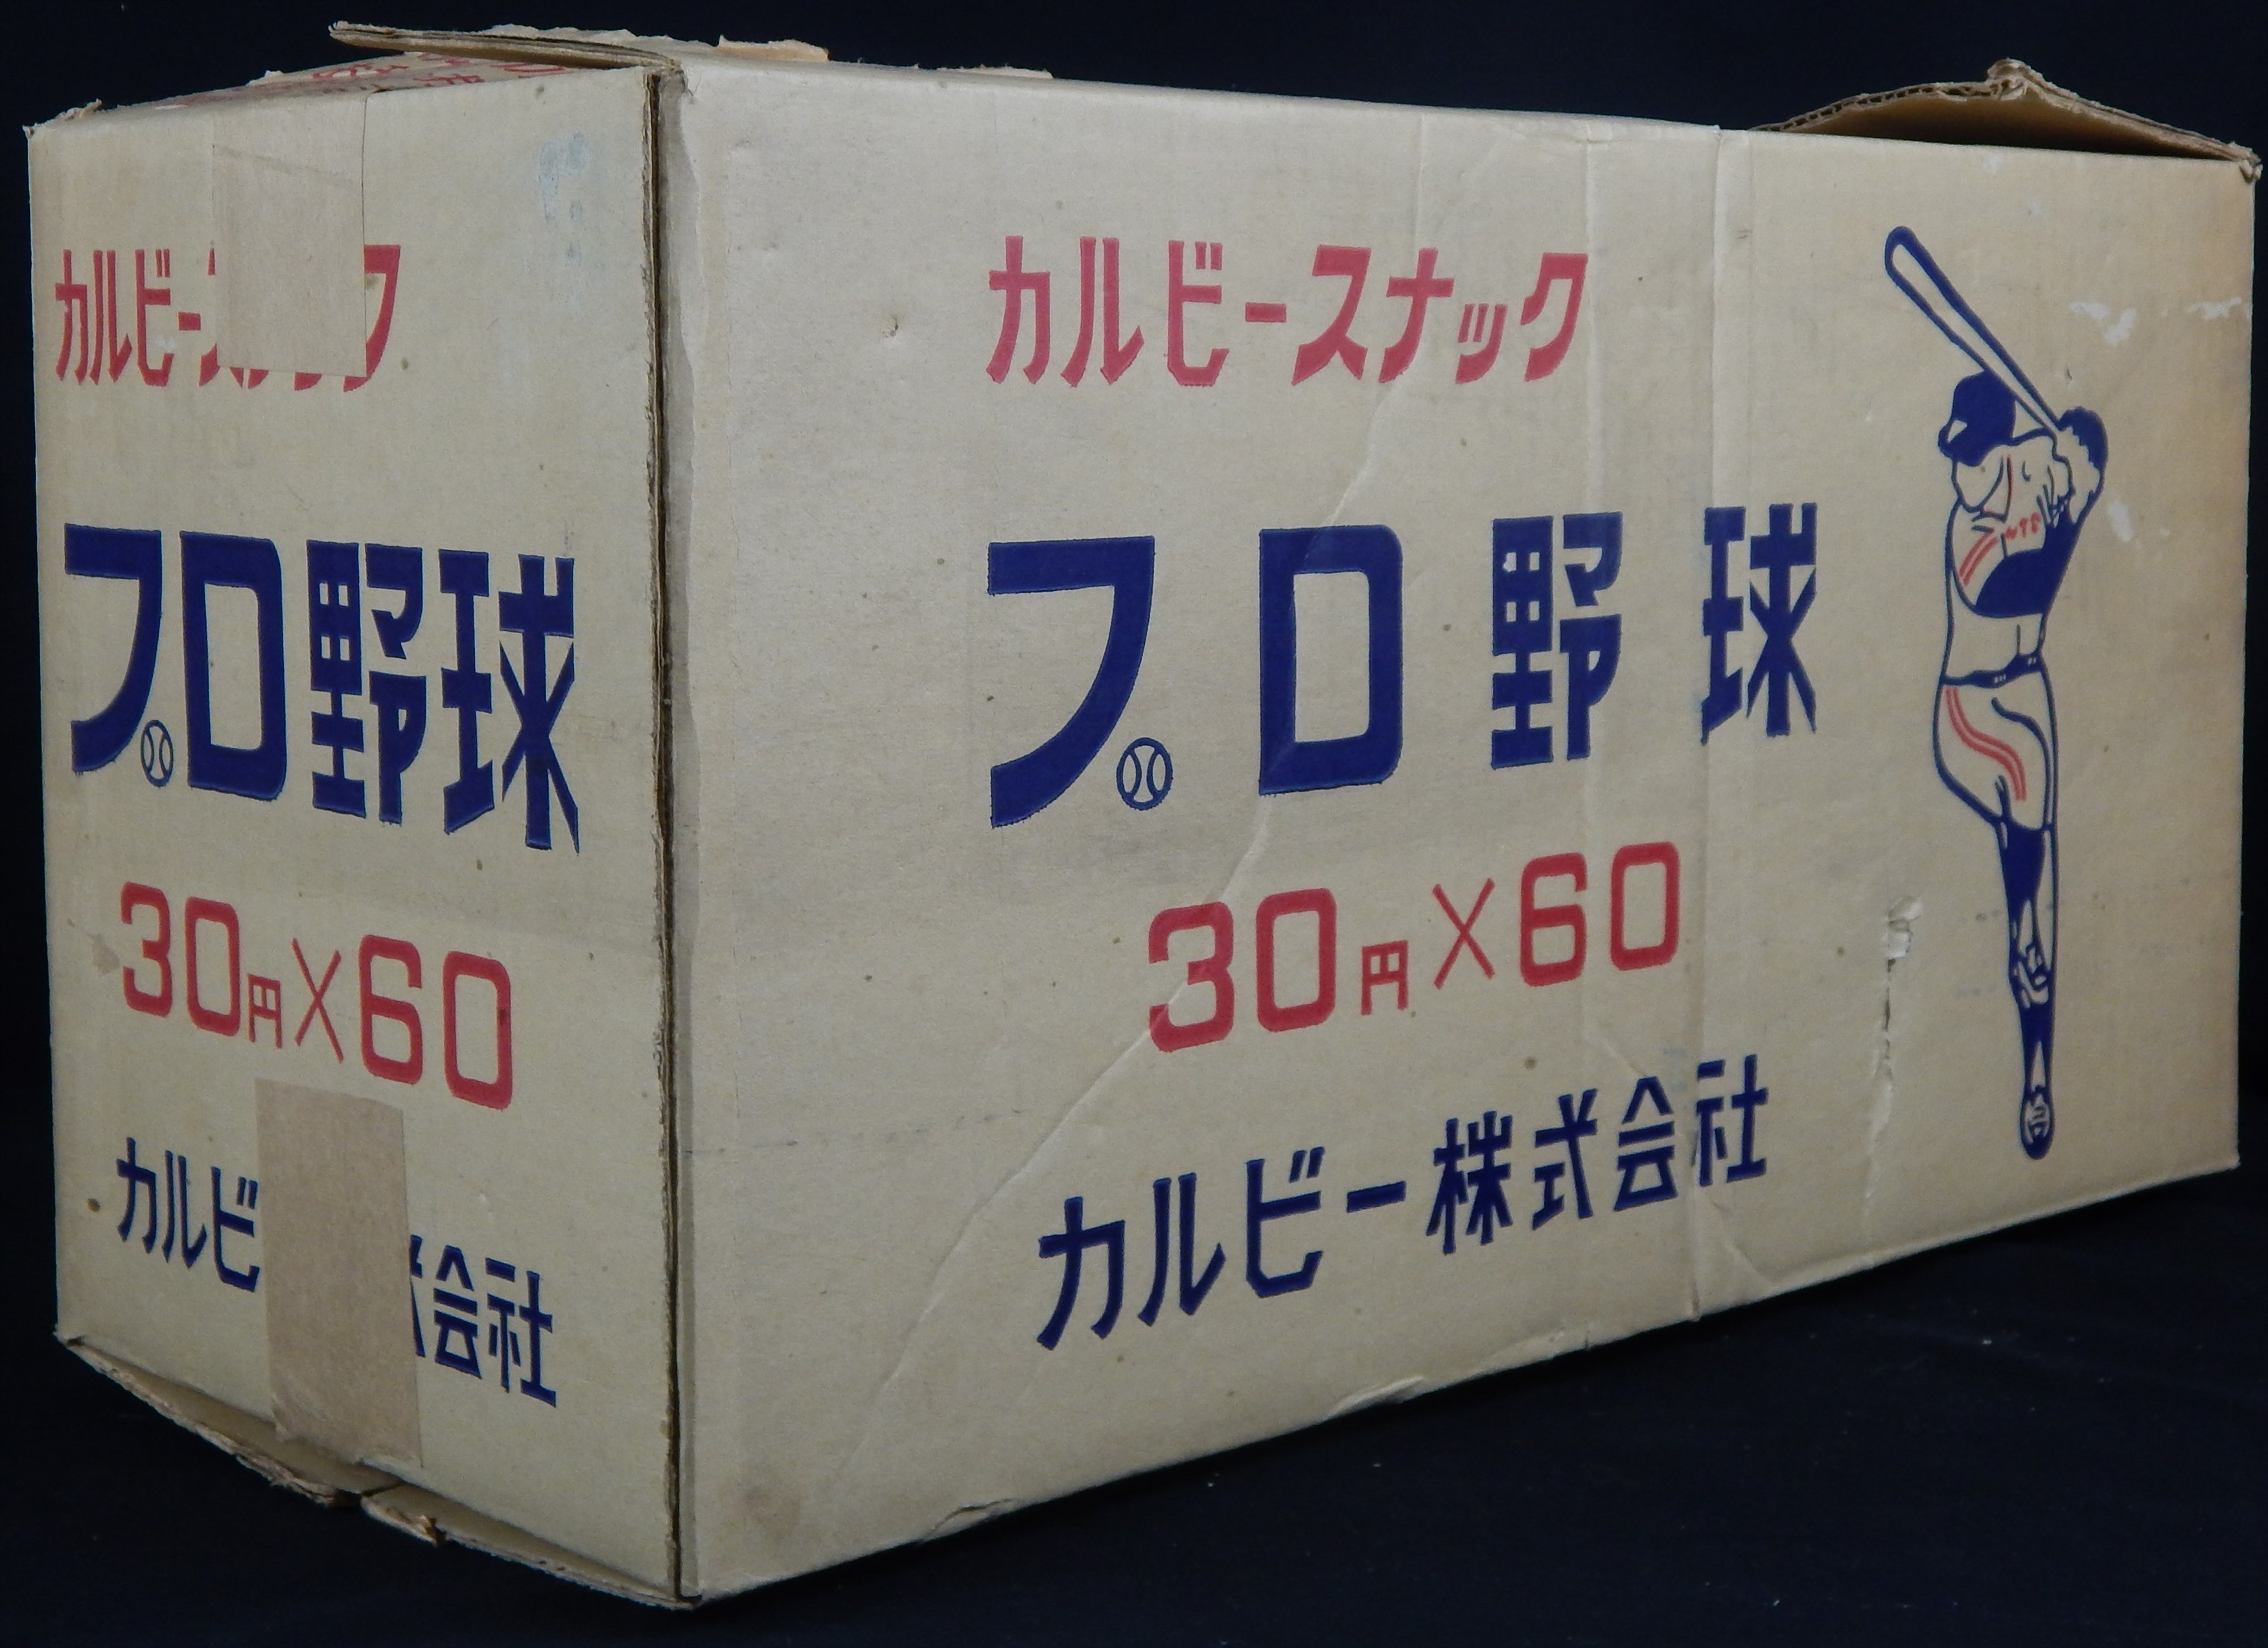 Circa 1973 Calbee Snack Cases Boxes (2)